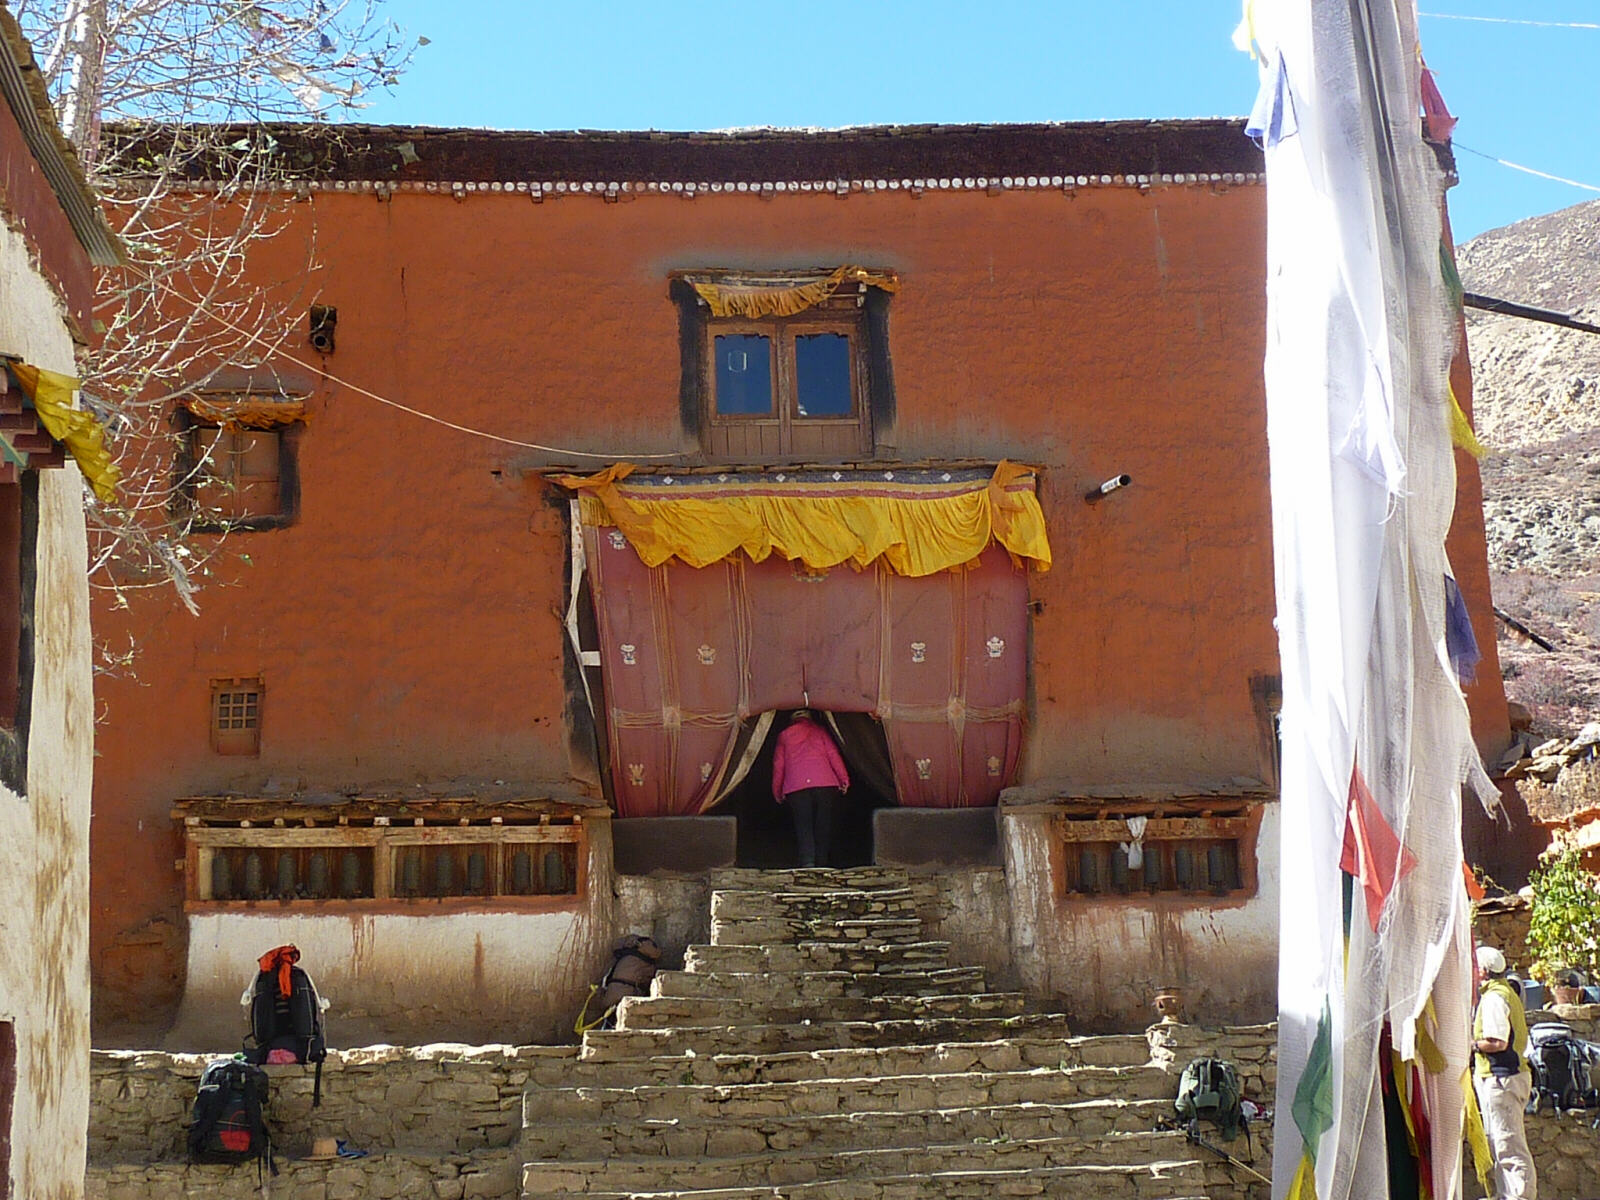 Ghar Gompa historic monastery, Nepal